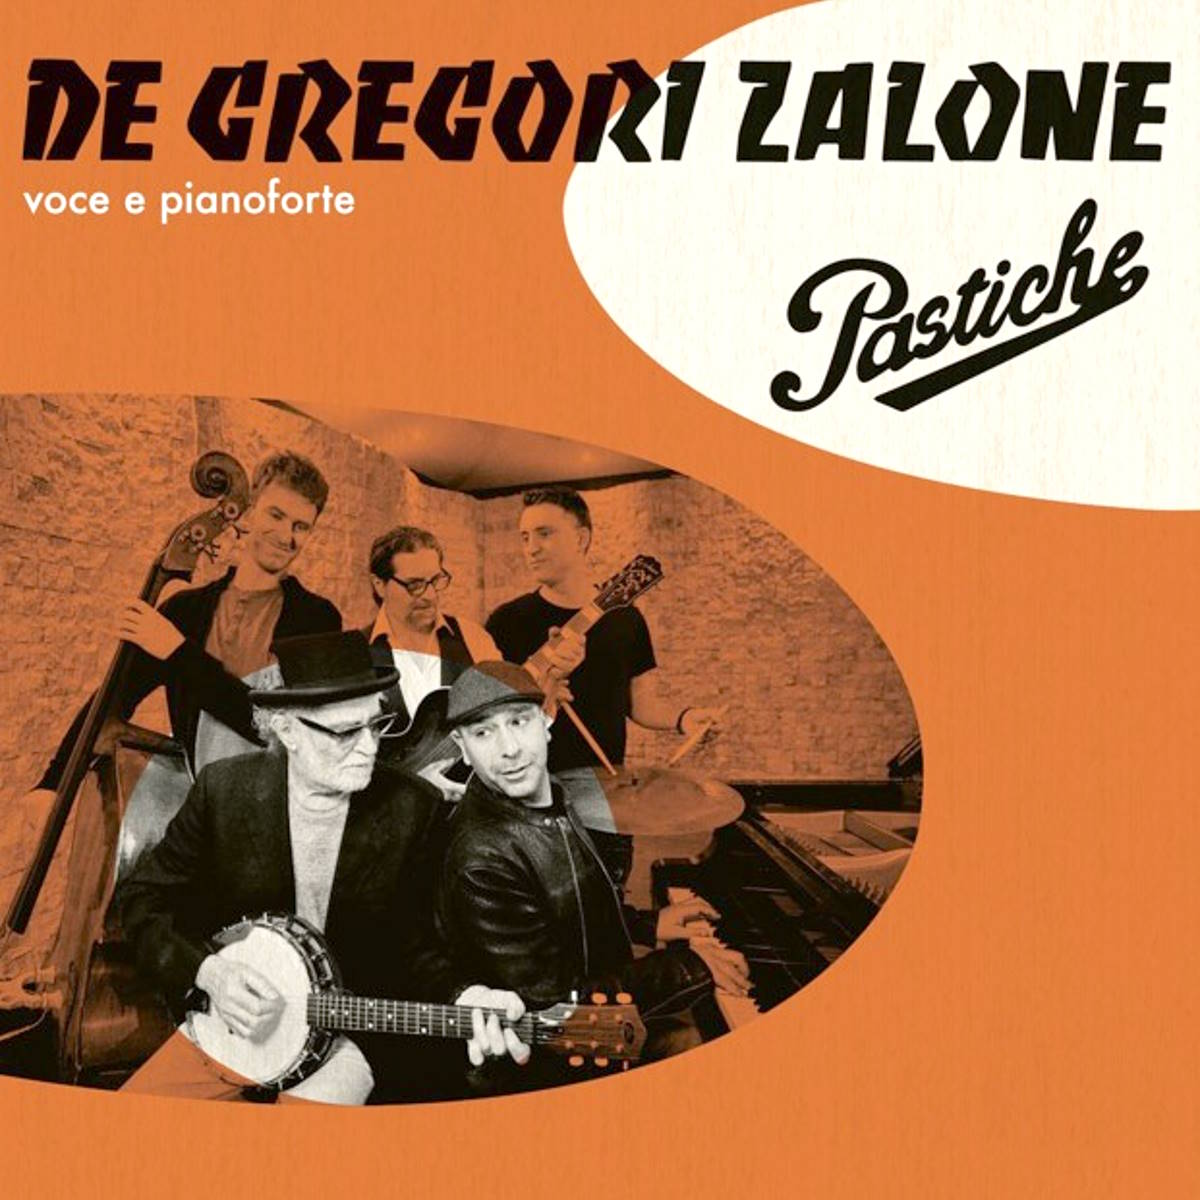 Francesco De Gregori e Checco Zalone insieme, per un disco “Pastiche”, in uscita il 12 aprile e, per un unico concerto, il 5 giugno, a Roma, alle Terme di Caracalla